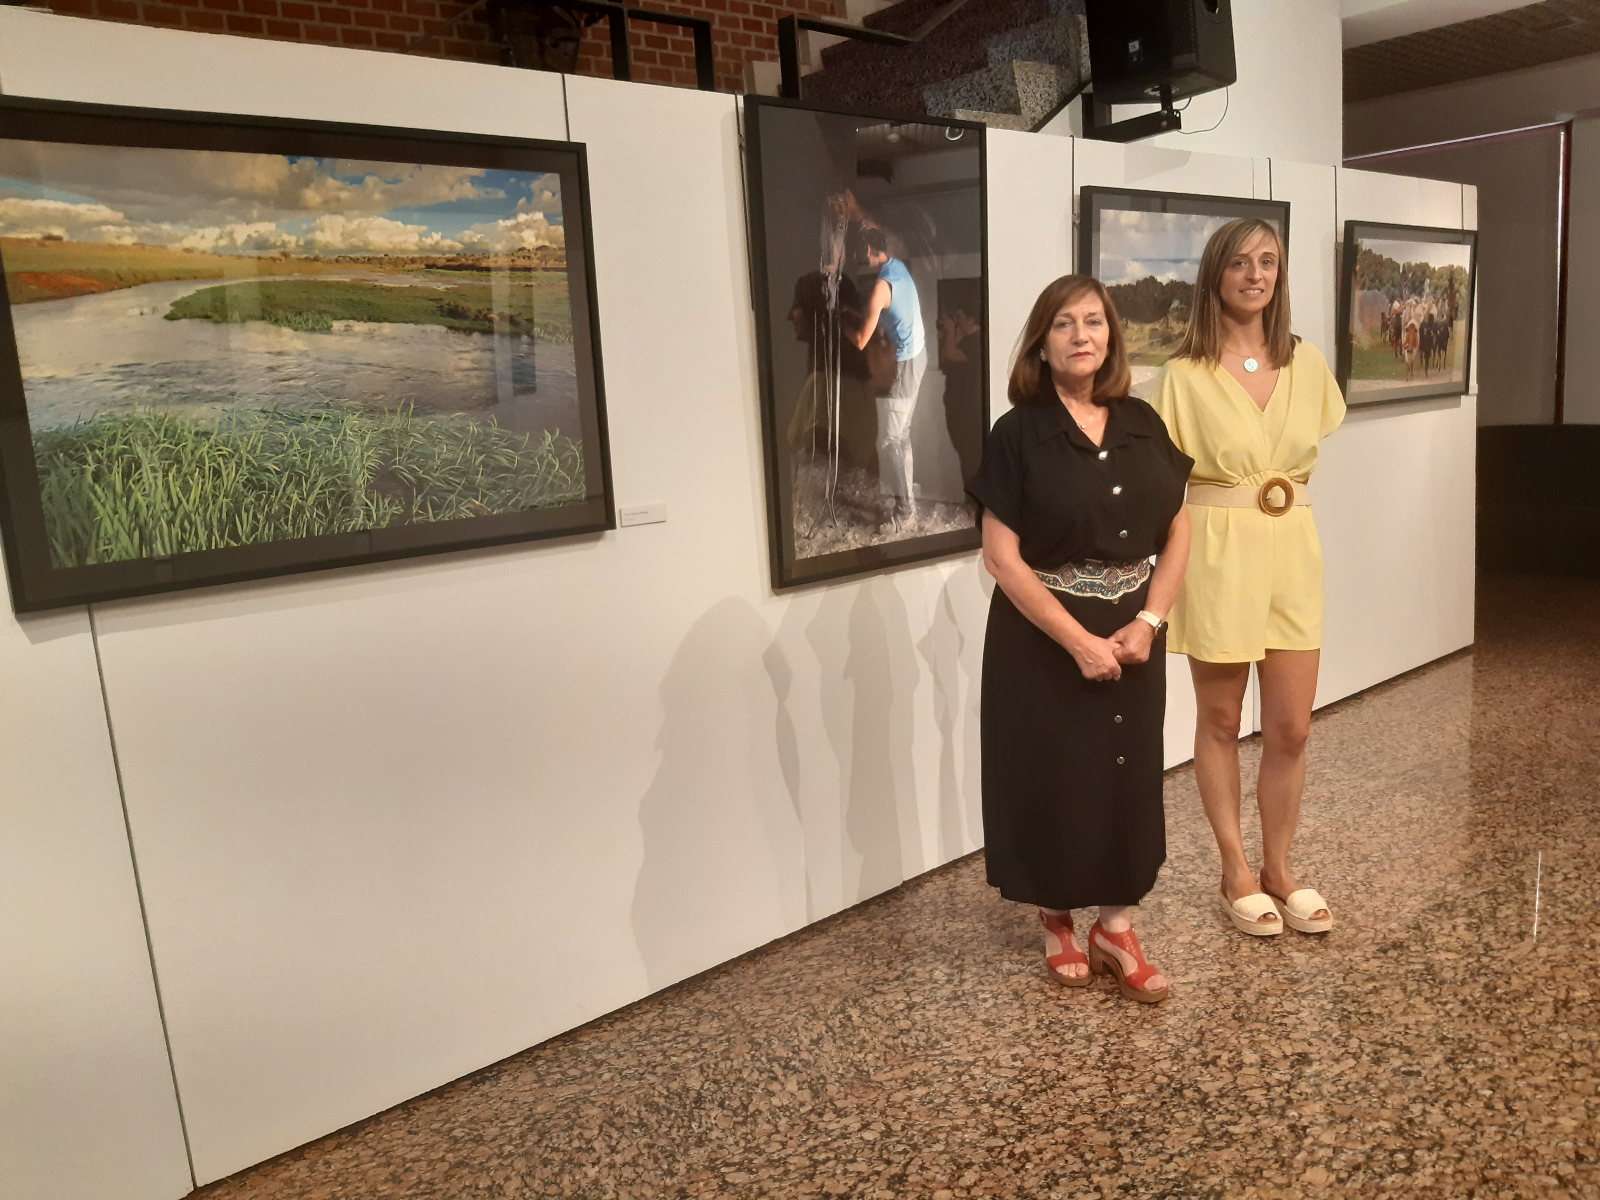 La alcaldesa Carmen Ávila y la concejal de Cultura, Fátima Manzano, inauguraban la exposición 'Los brazos de la dehesa' en el CDS